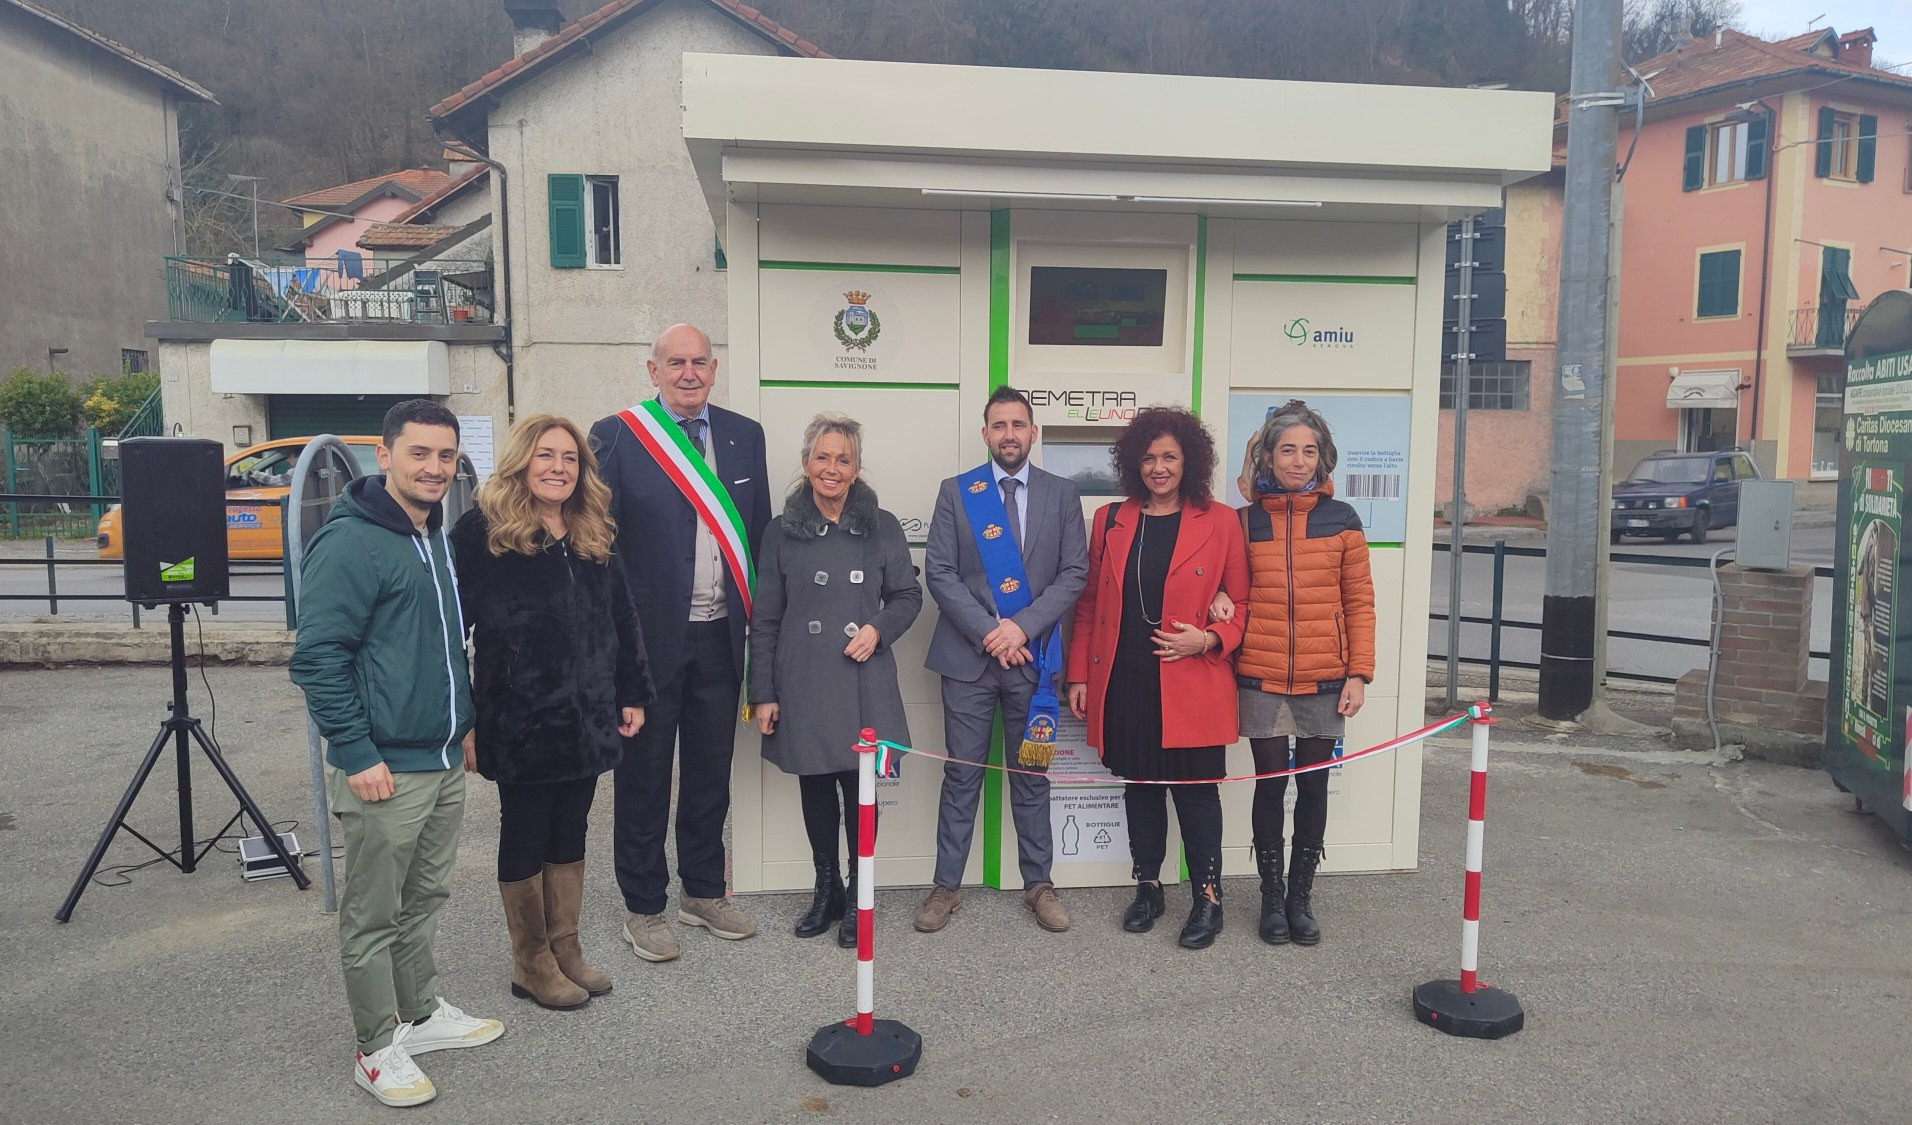 PlasTiPremia arriva a Savignone con la macchina 'mangiaplastica'